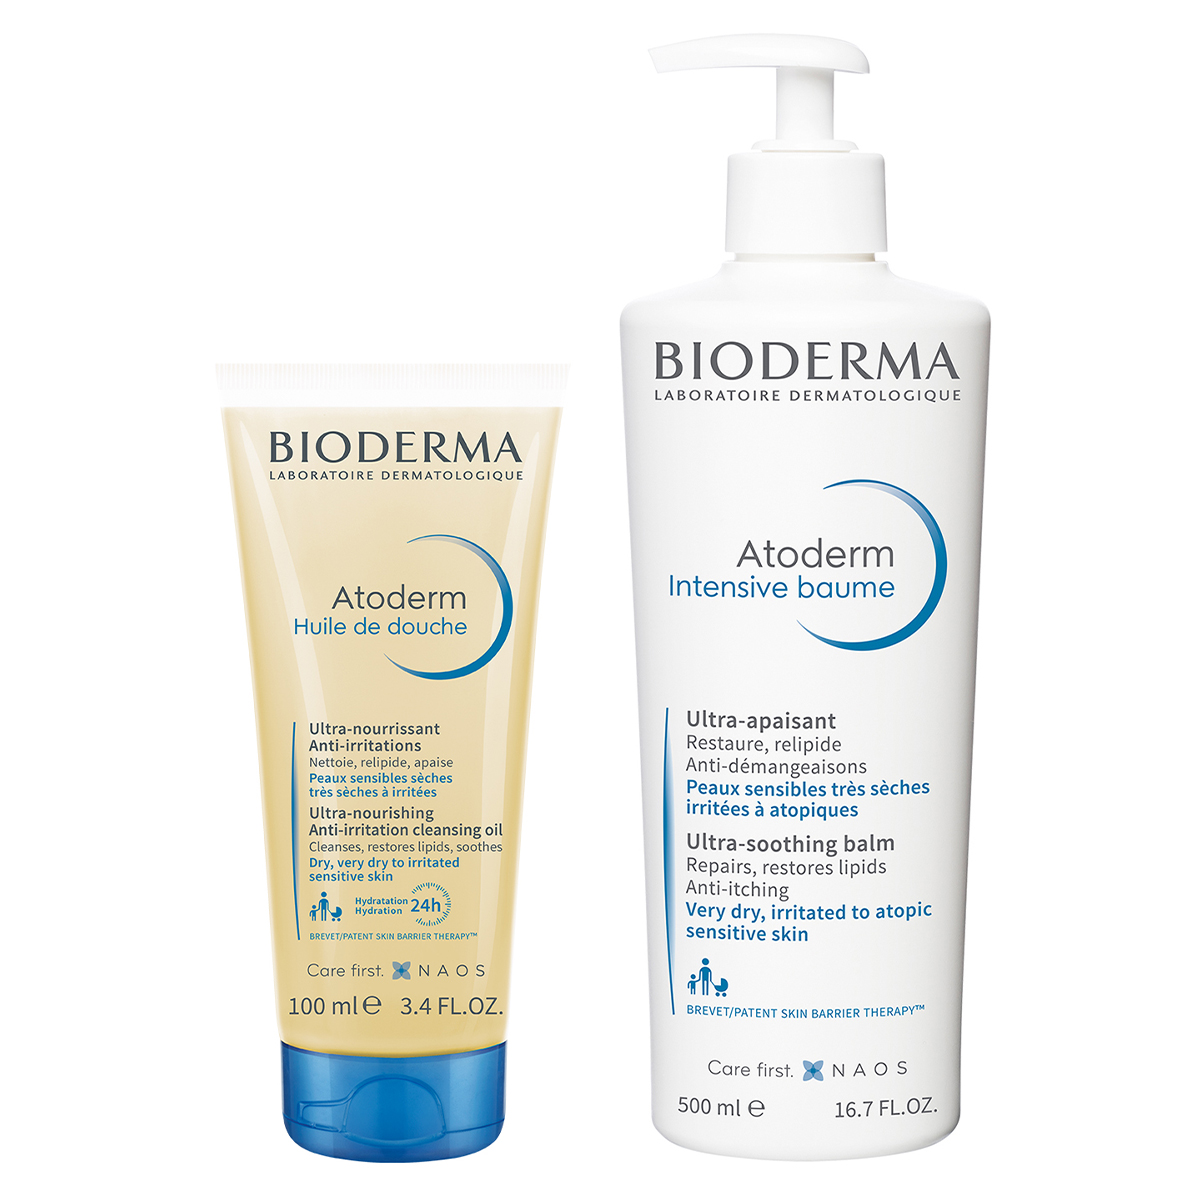 Bioderma Набор средств для сухой, чувствительной, атопичной кожи (Bioderma, Atoderm) bioderma бальзам интенсив 200 мл bioderma atoderm